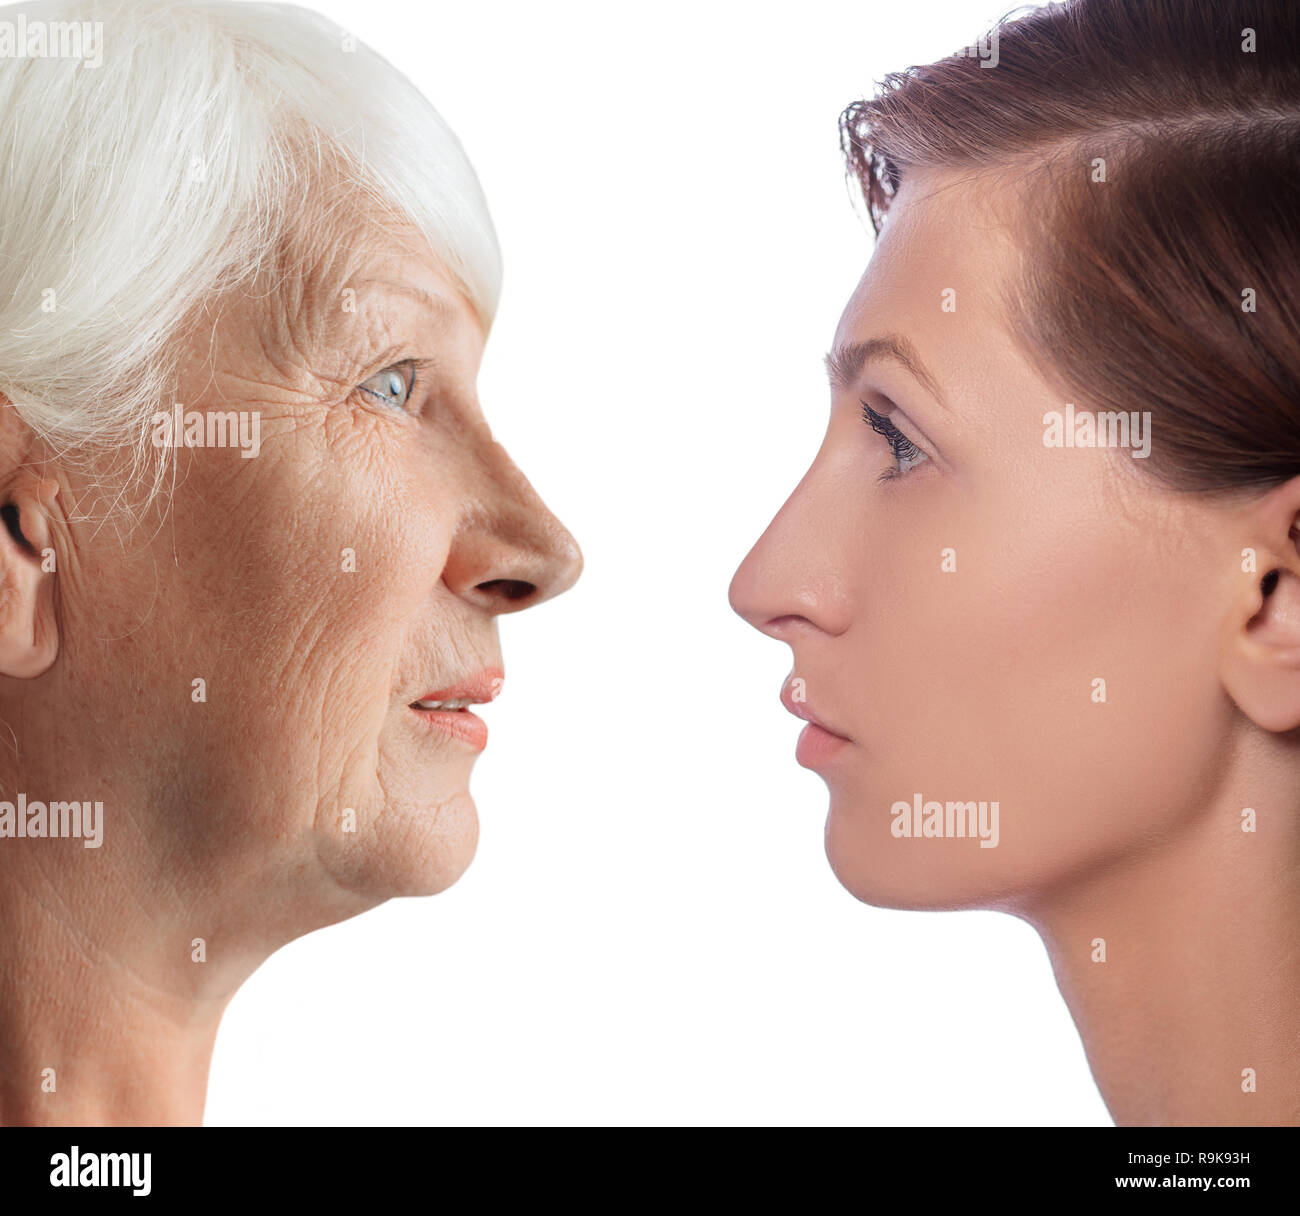 Übersicht Alterungsprozess. Gesichter, junge Frauen und ältere Frau. Vergleich weibliche Gesichter, Alterungsprozess Stockfoto